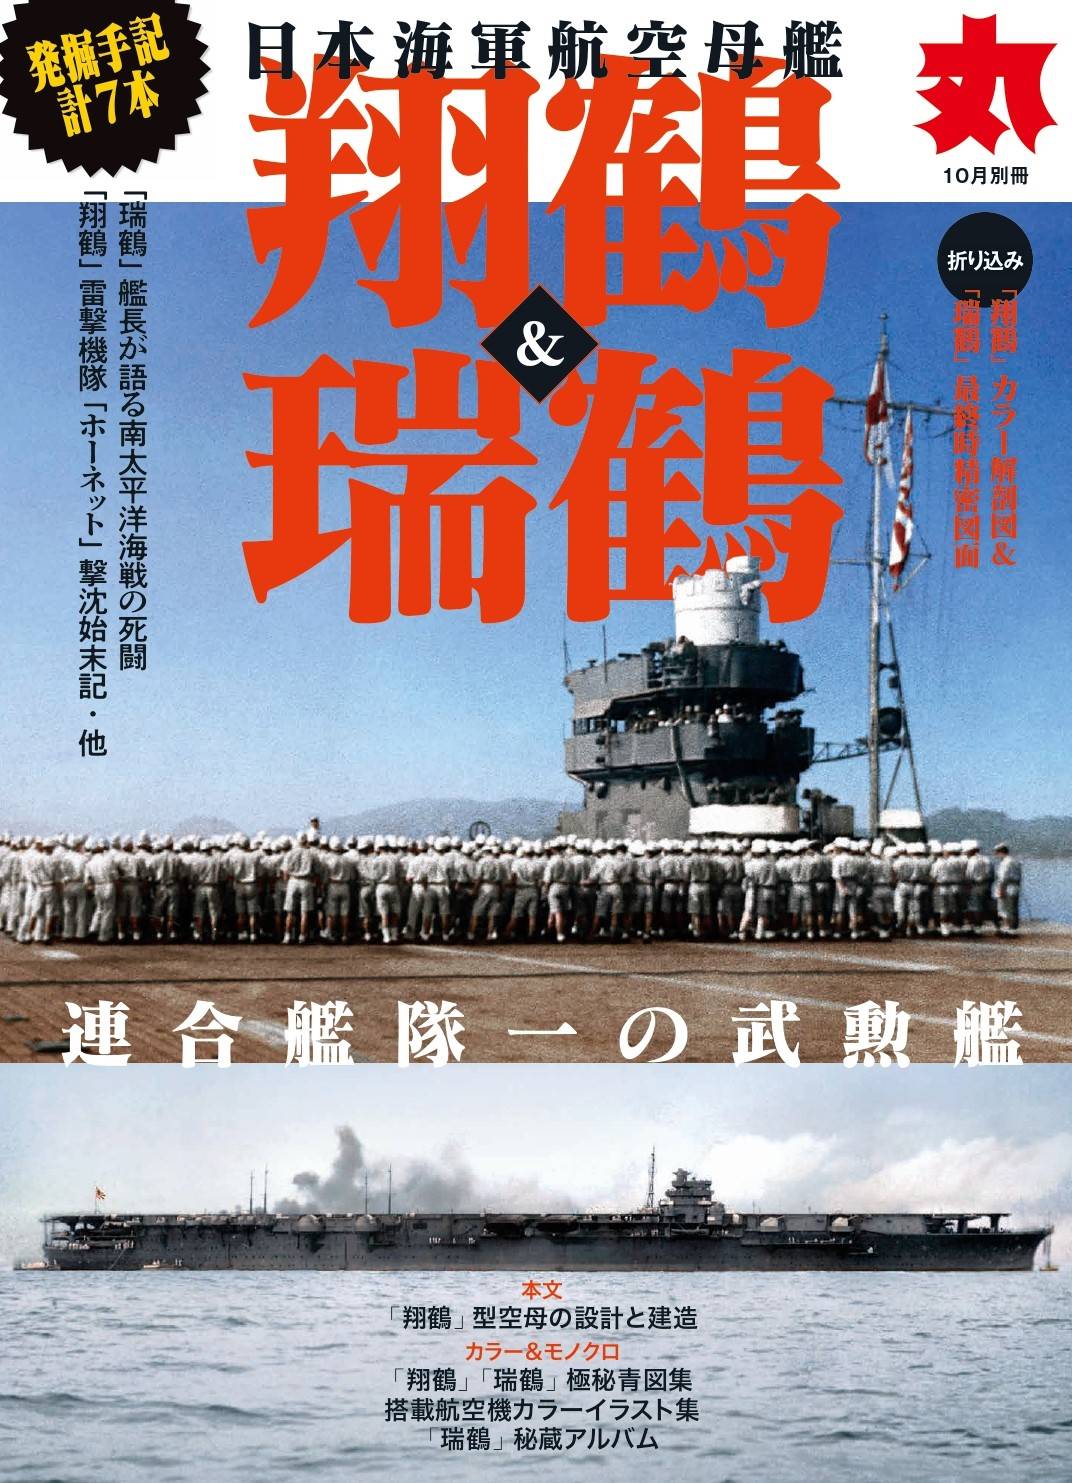 日本海軍航空母艦「翔鶴」＆「瑞鶴」 ミリタリー総合誌「丸」10月 